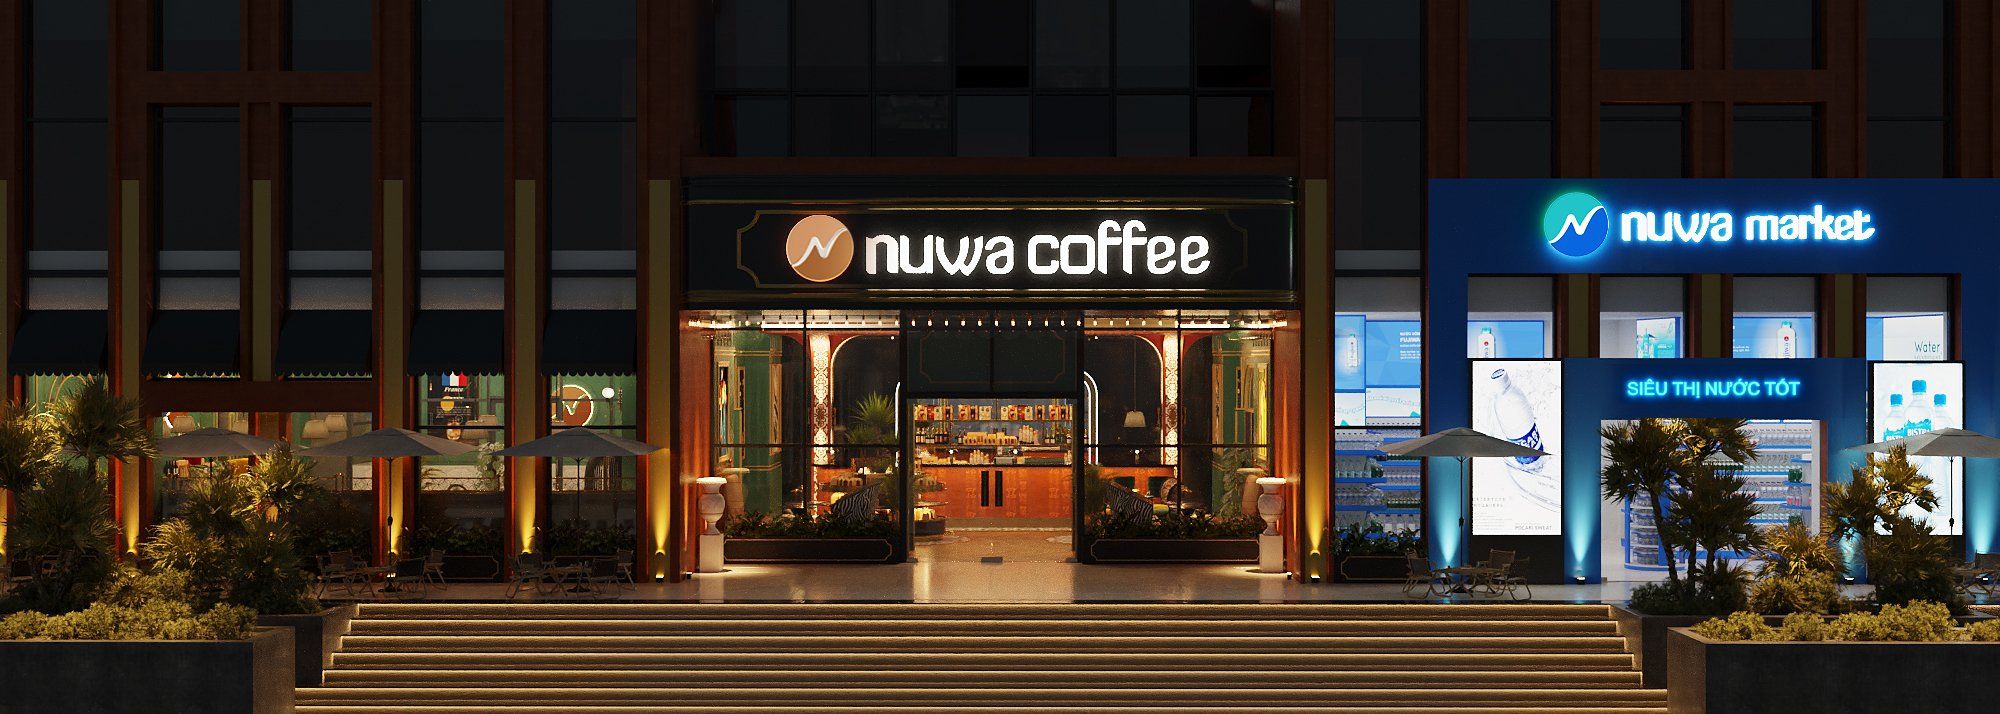 Kế hoạch khai trương cửa hàng cà phê Nuwa Coffee